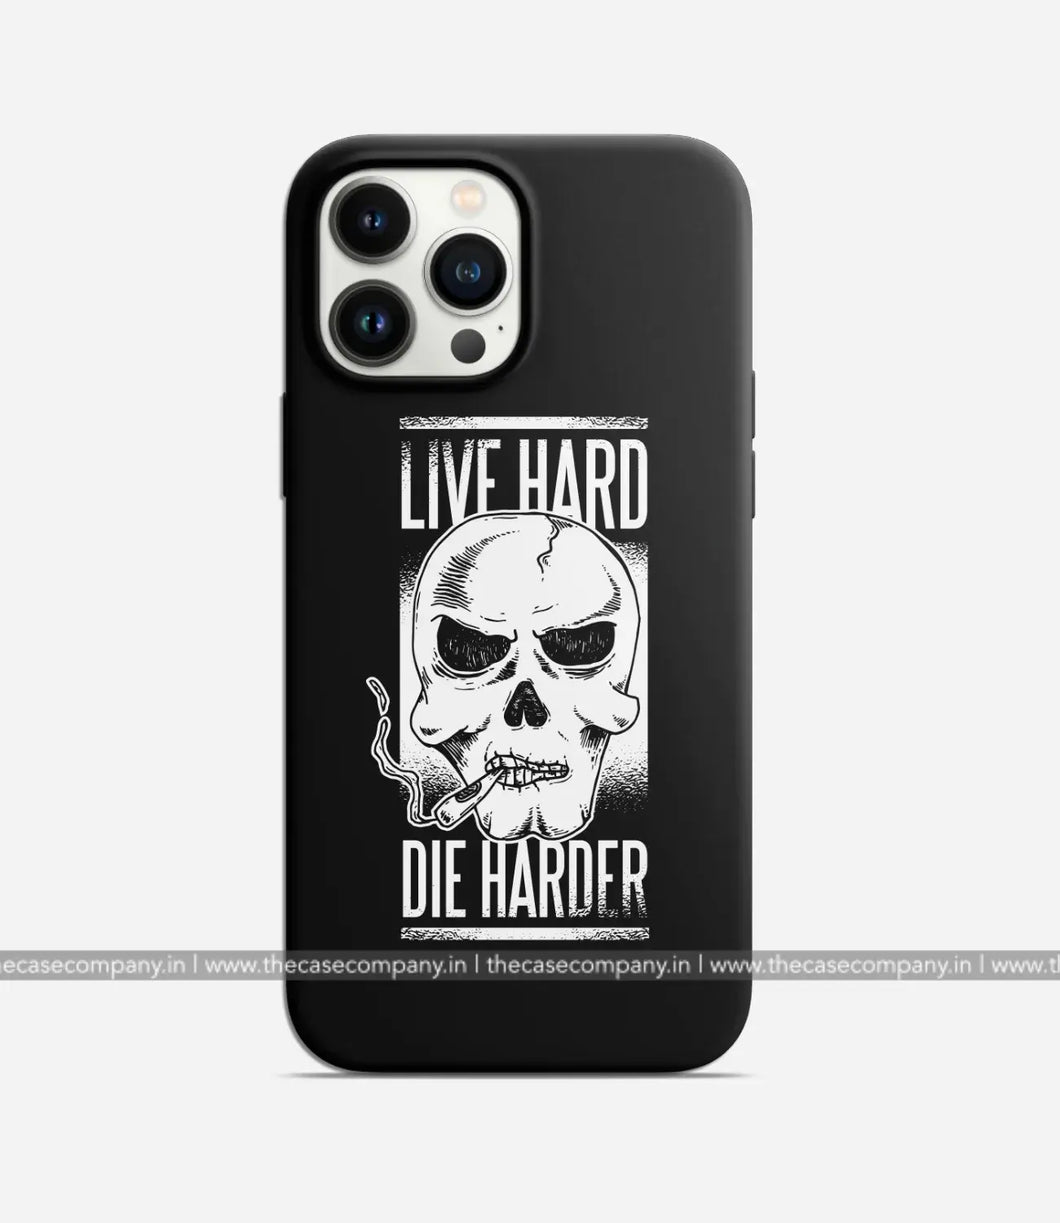 Live Hard Die Harder Case